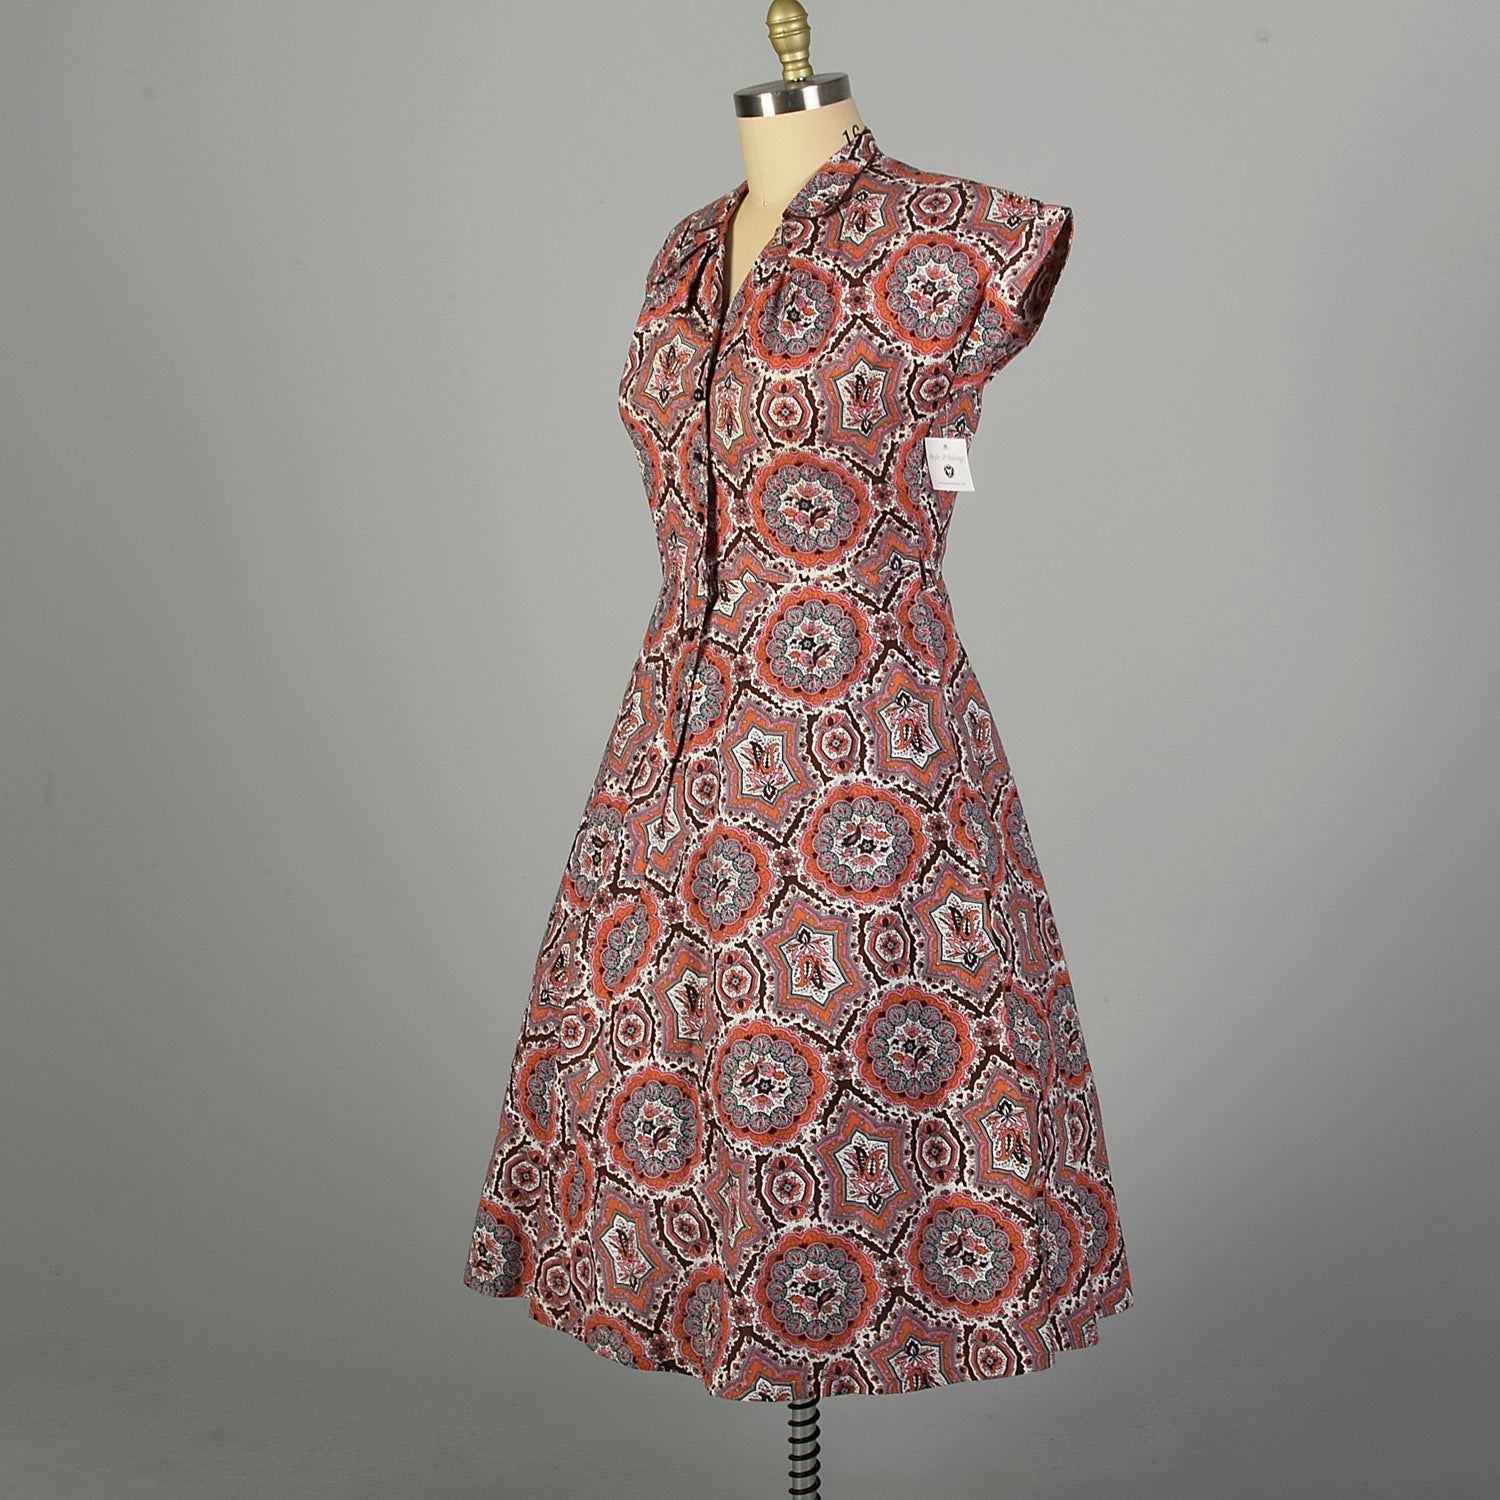 XL 1950s Day Dress Cotton Short Sleeve Volup Bohemian Print Casual Summer Shirtwaist